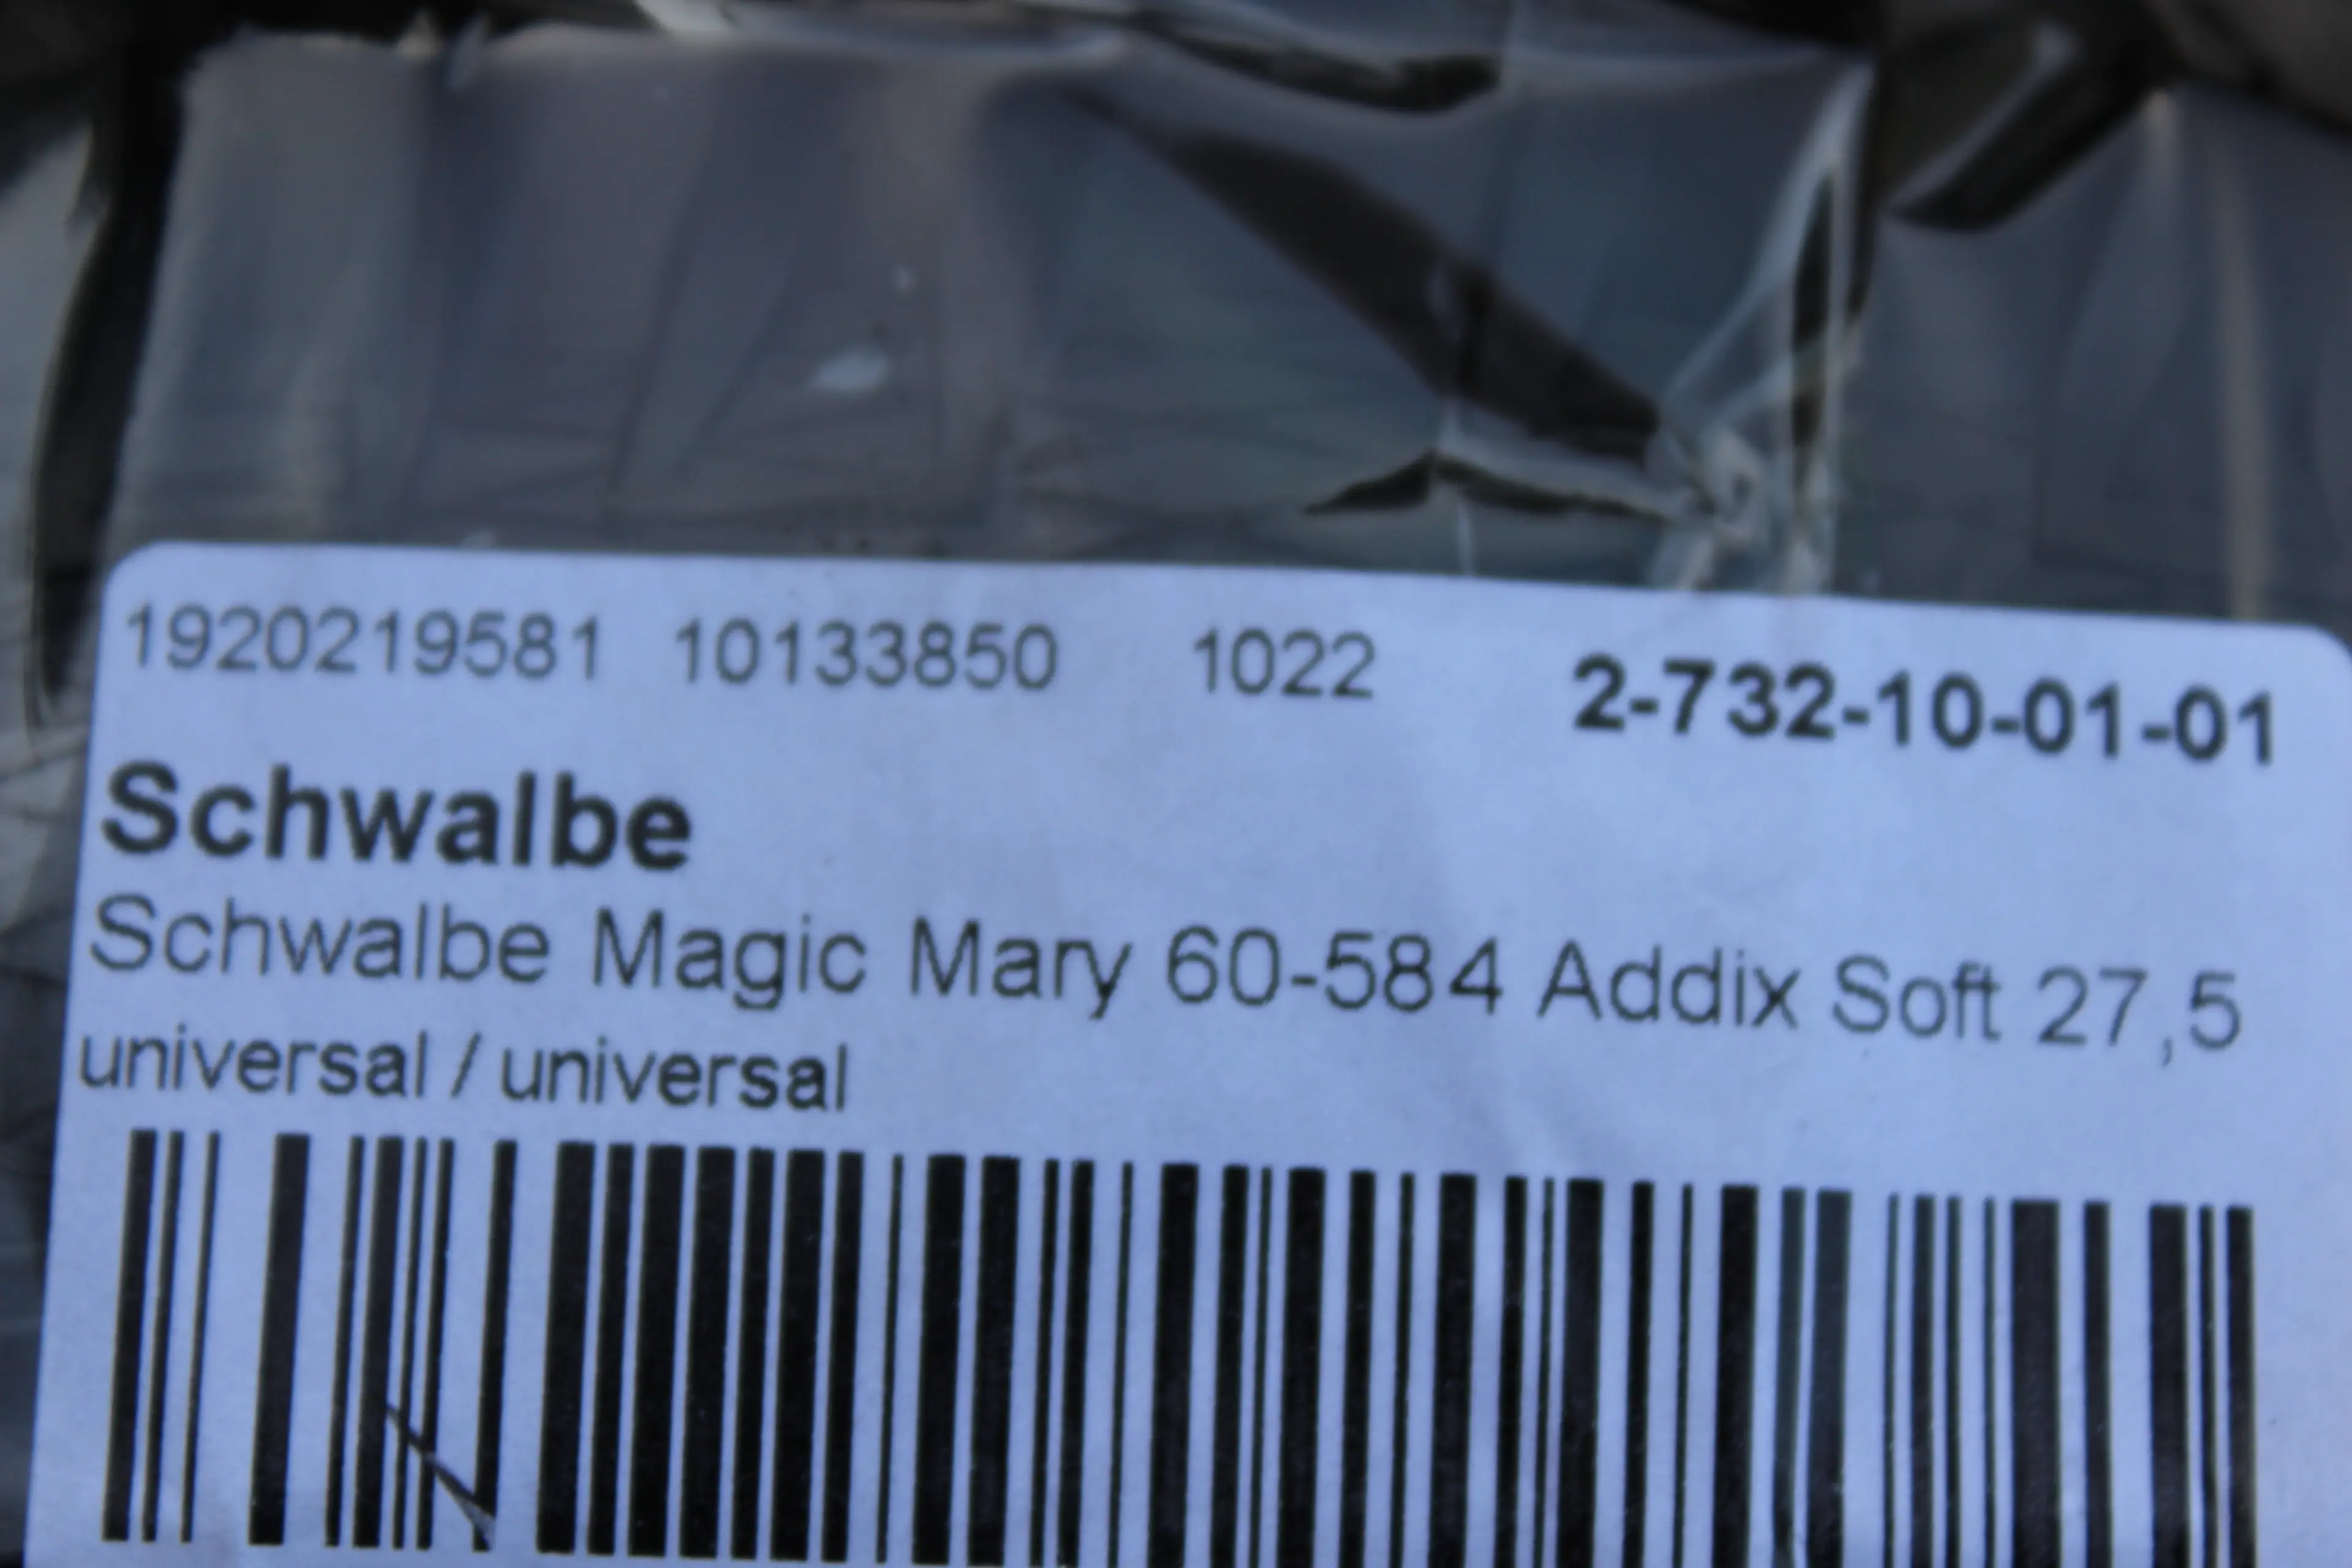 3. Schwalbe Magic Mary Evo 27.5x2.35 Addix Soft - Super Trail TL-Easy